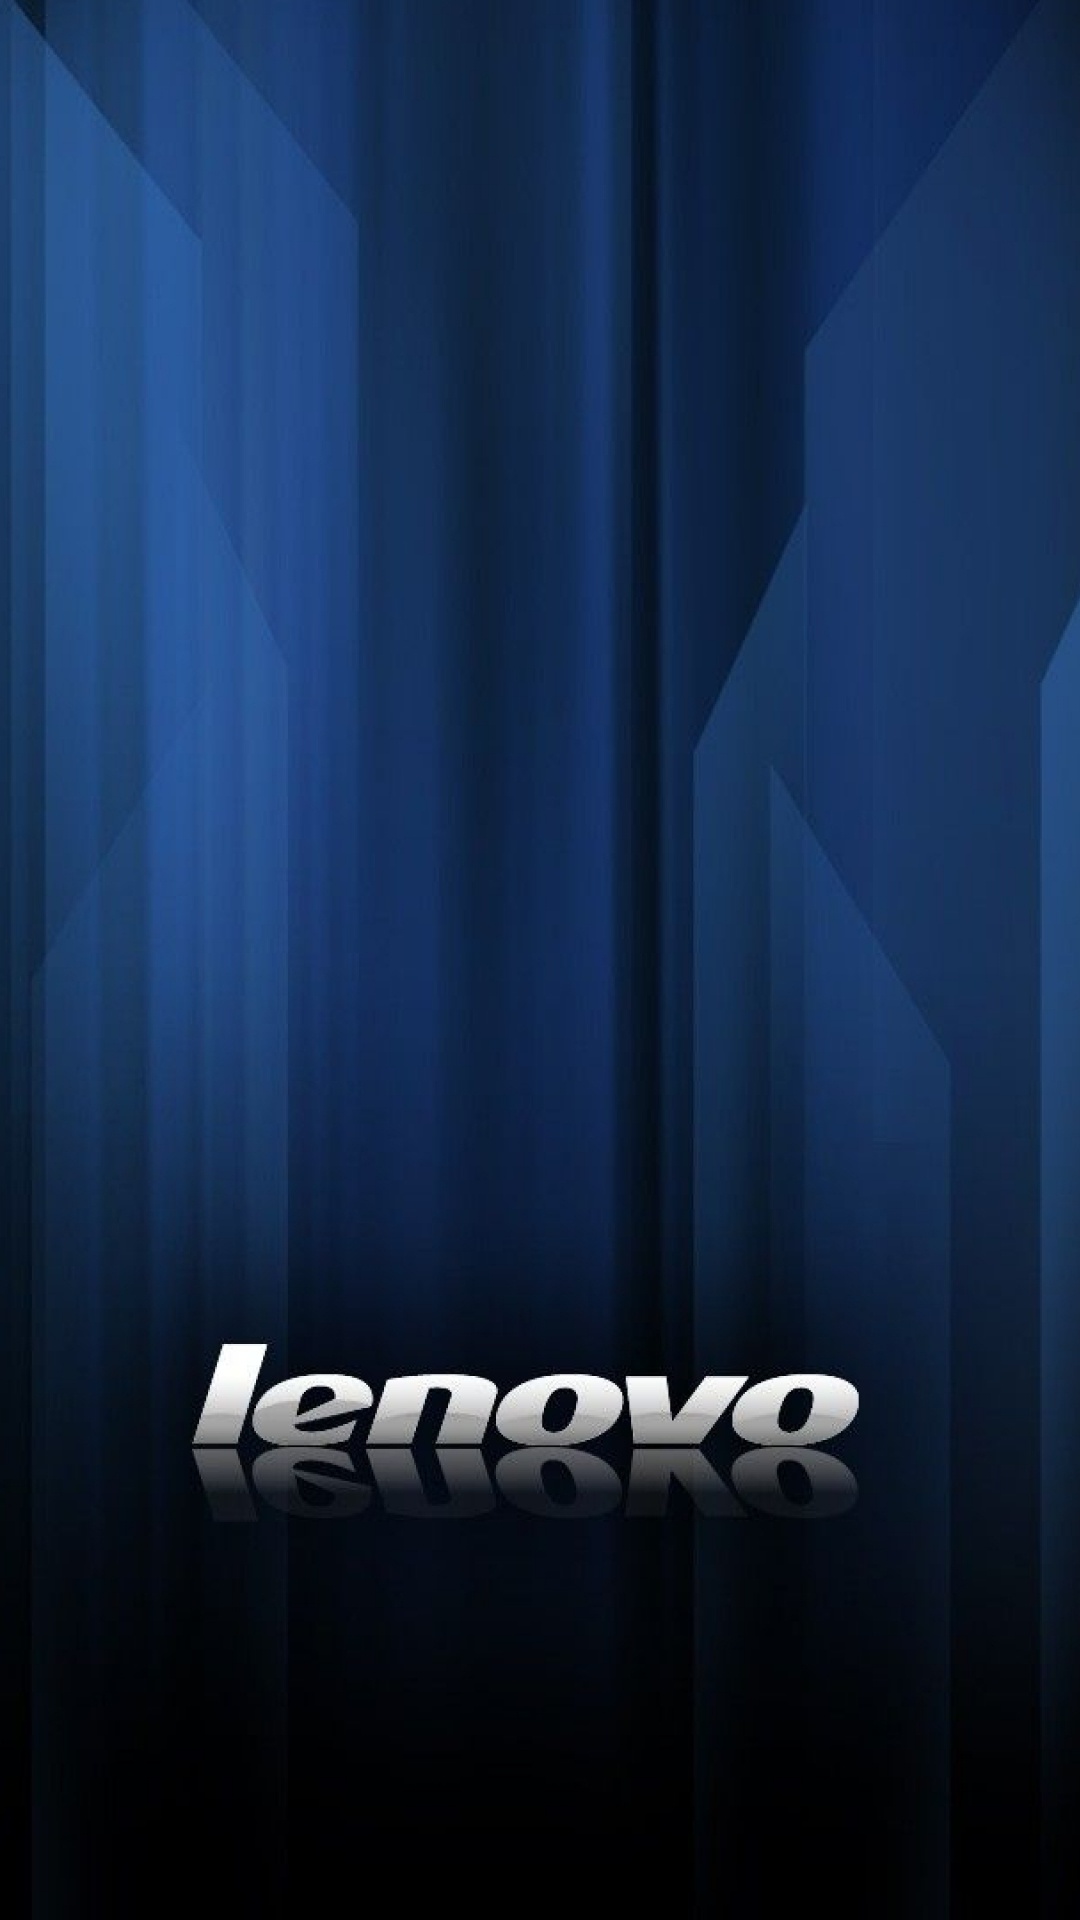 Lenovo, Azul, Cortina, Letra, Gráficos. Wallpaper in 1080x1920 Resolution